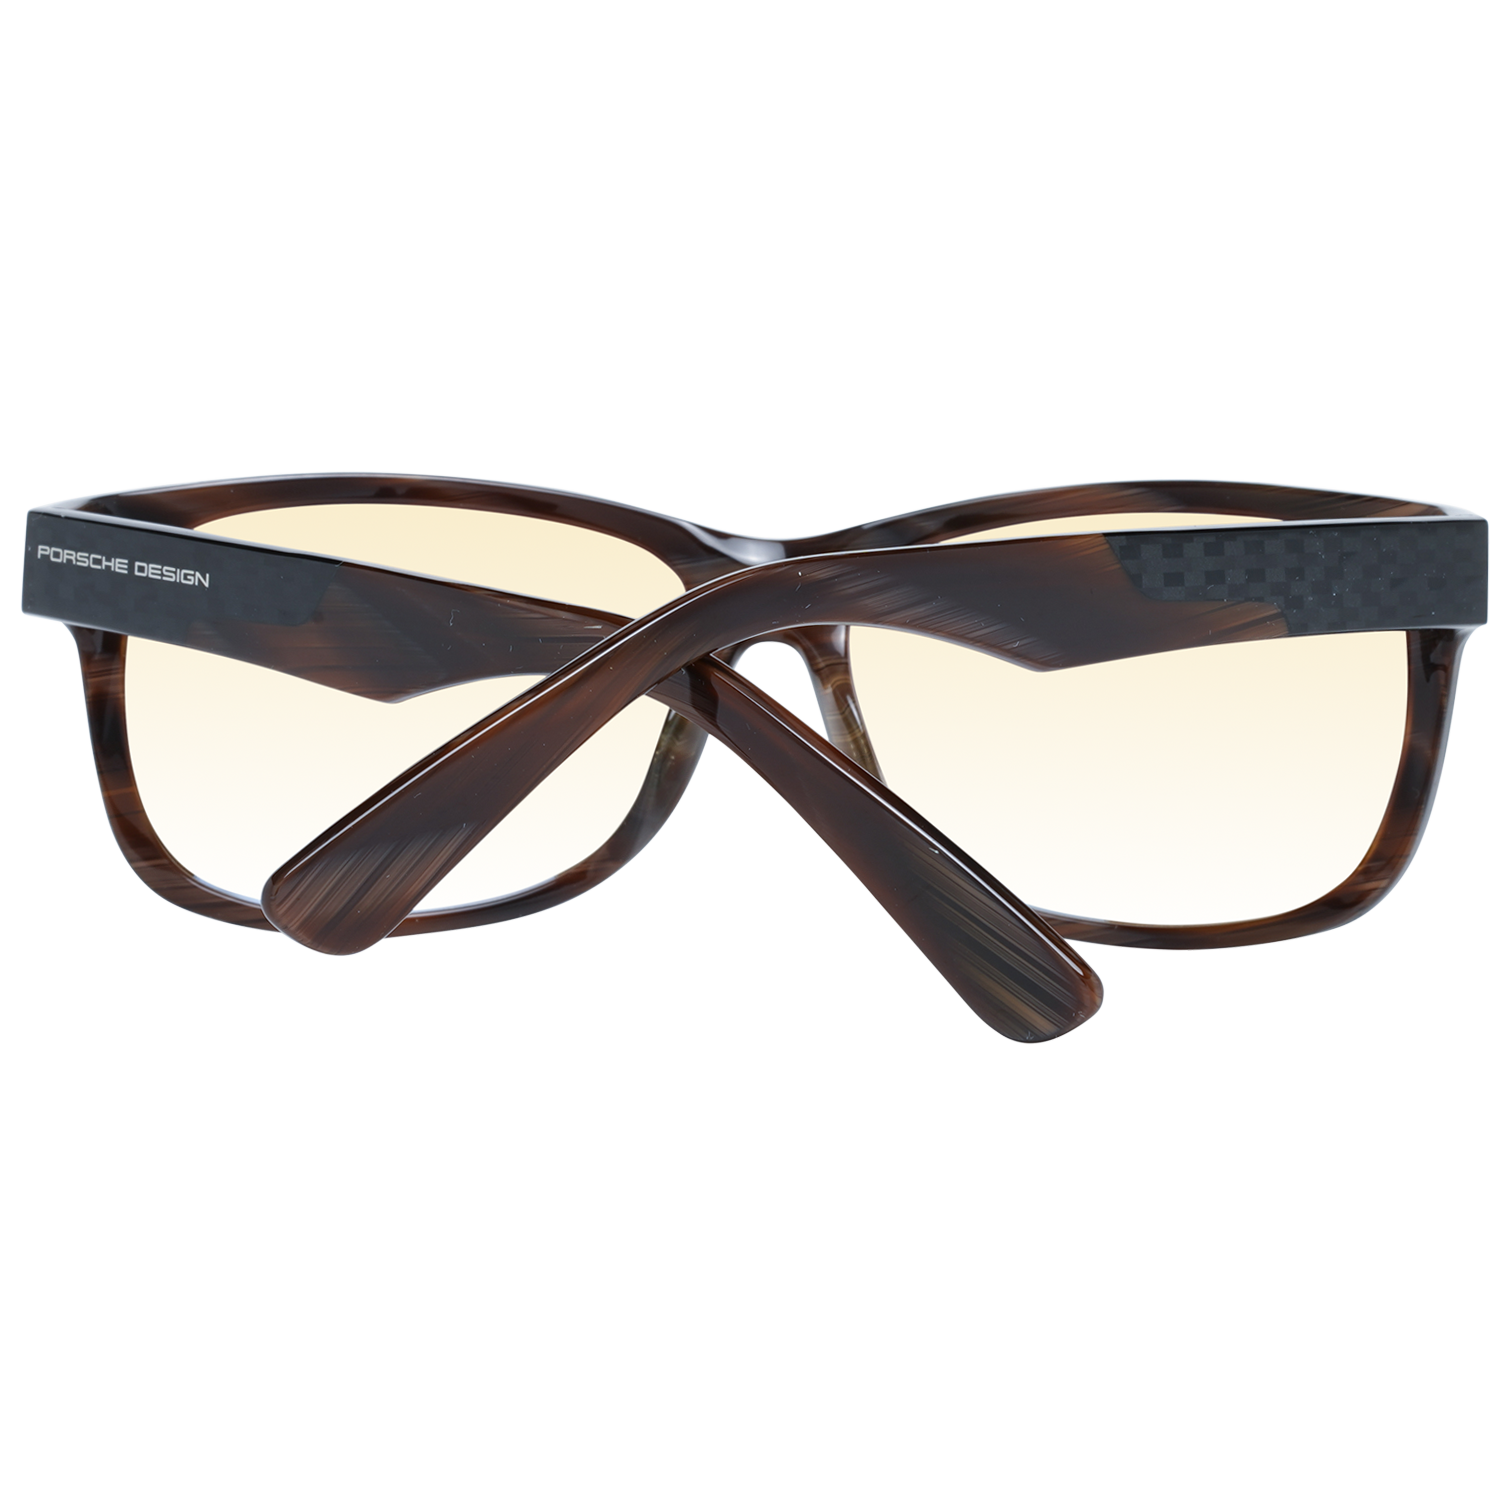 Porsche Design Sunglasses Porsche Design Sunglasses P8907 B 62 Eyeglasses Eyewear UK USA Australia 